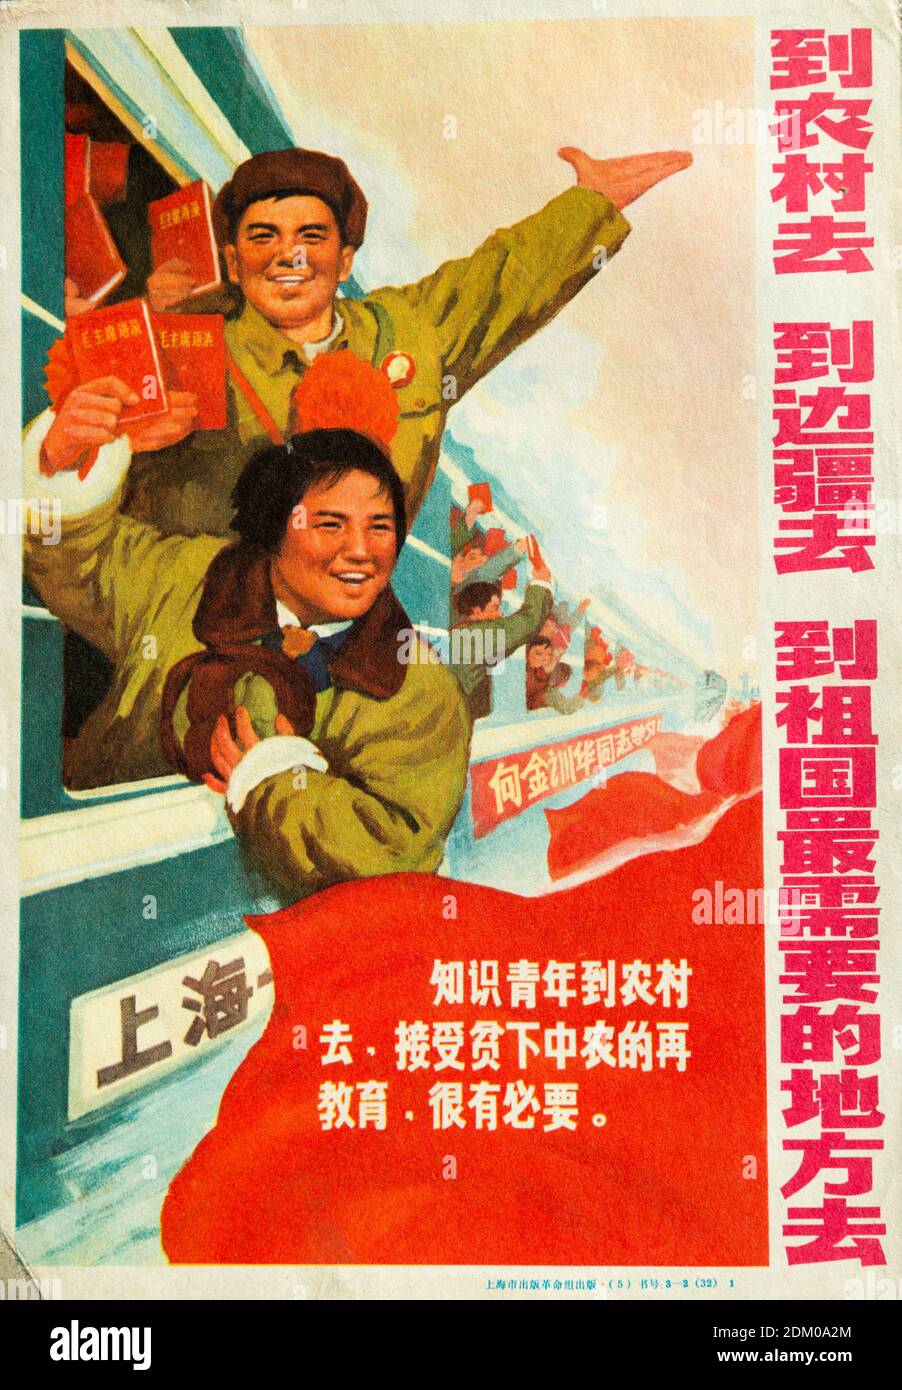 Ein echtes Propagandaplakat während der Kulturrevolution in China. Die chinesischen Schriftzeichen lauten: Geh aufs Land, an die Grenzen, an den Ort Stockfoto